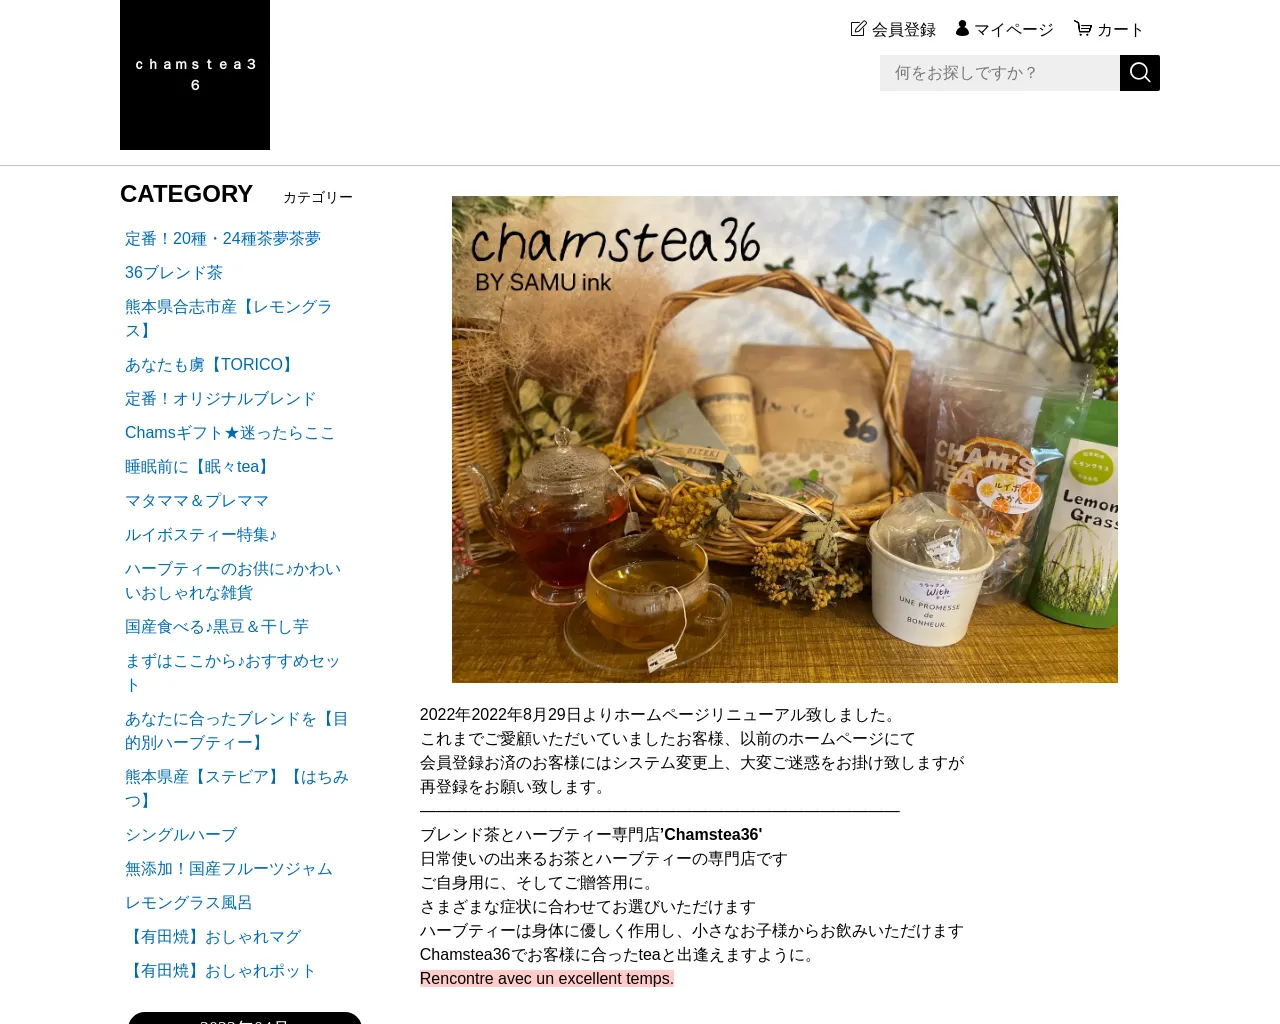 Cham's tea36 site